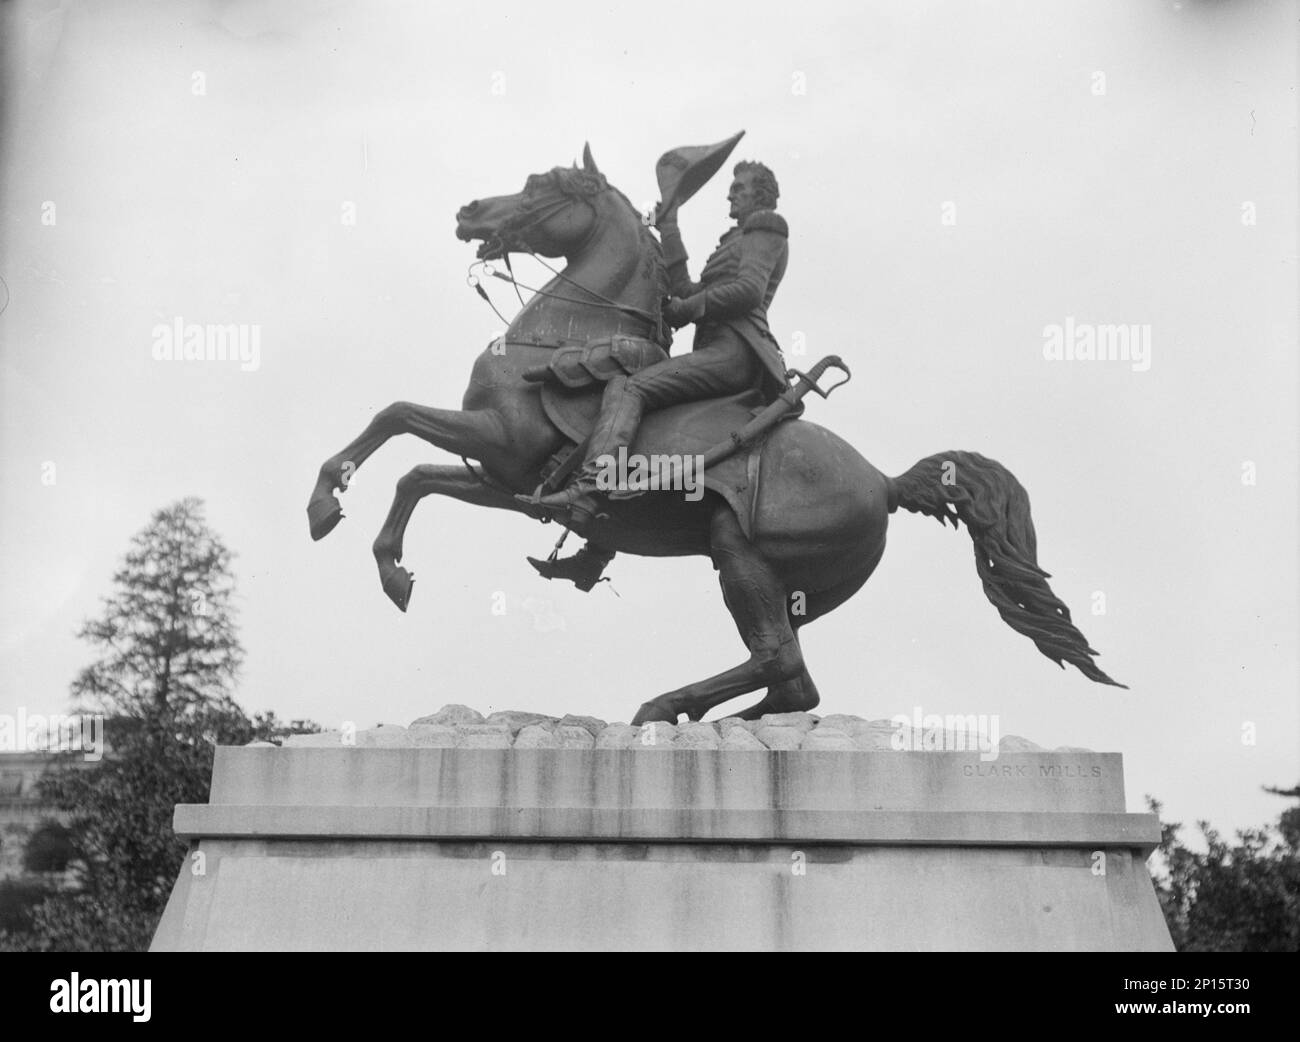 Reiterstatuen in Washington, D.C., zwischen 1911 und 1942. Skulptur von General Andrew Jackson von Clark Mills. Fertiggestellt im Jahr 1852, war dies die erste Bronzestatue in den Vereinigten Staaten und „die erste selbstbalancierte, grassierende Reiterstatue der Welt“. Stockfoto